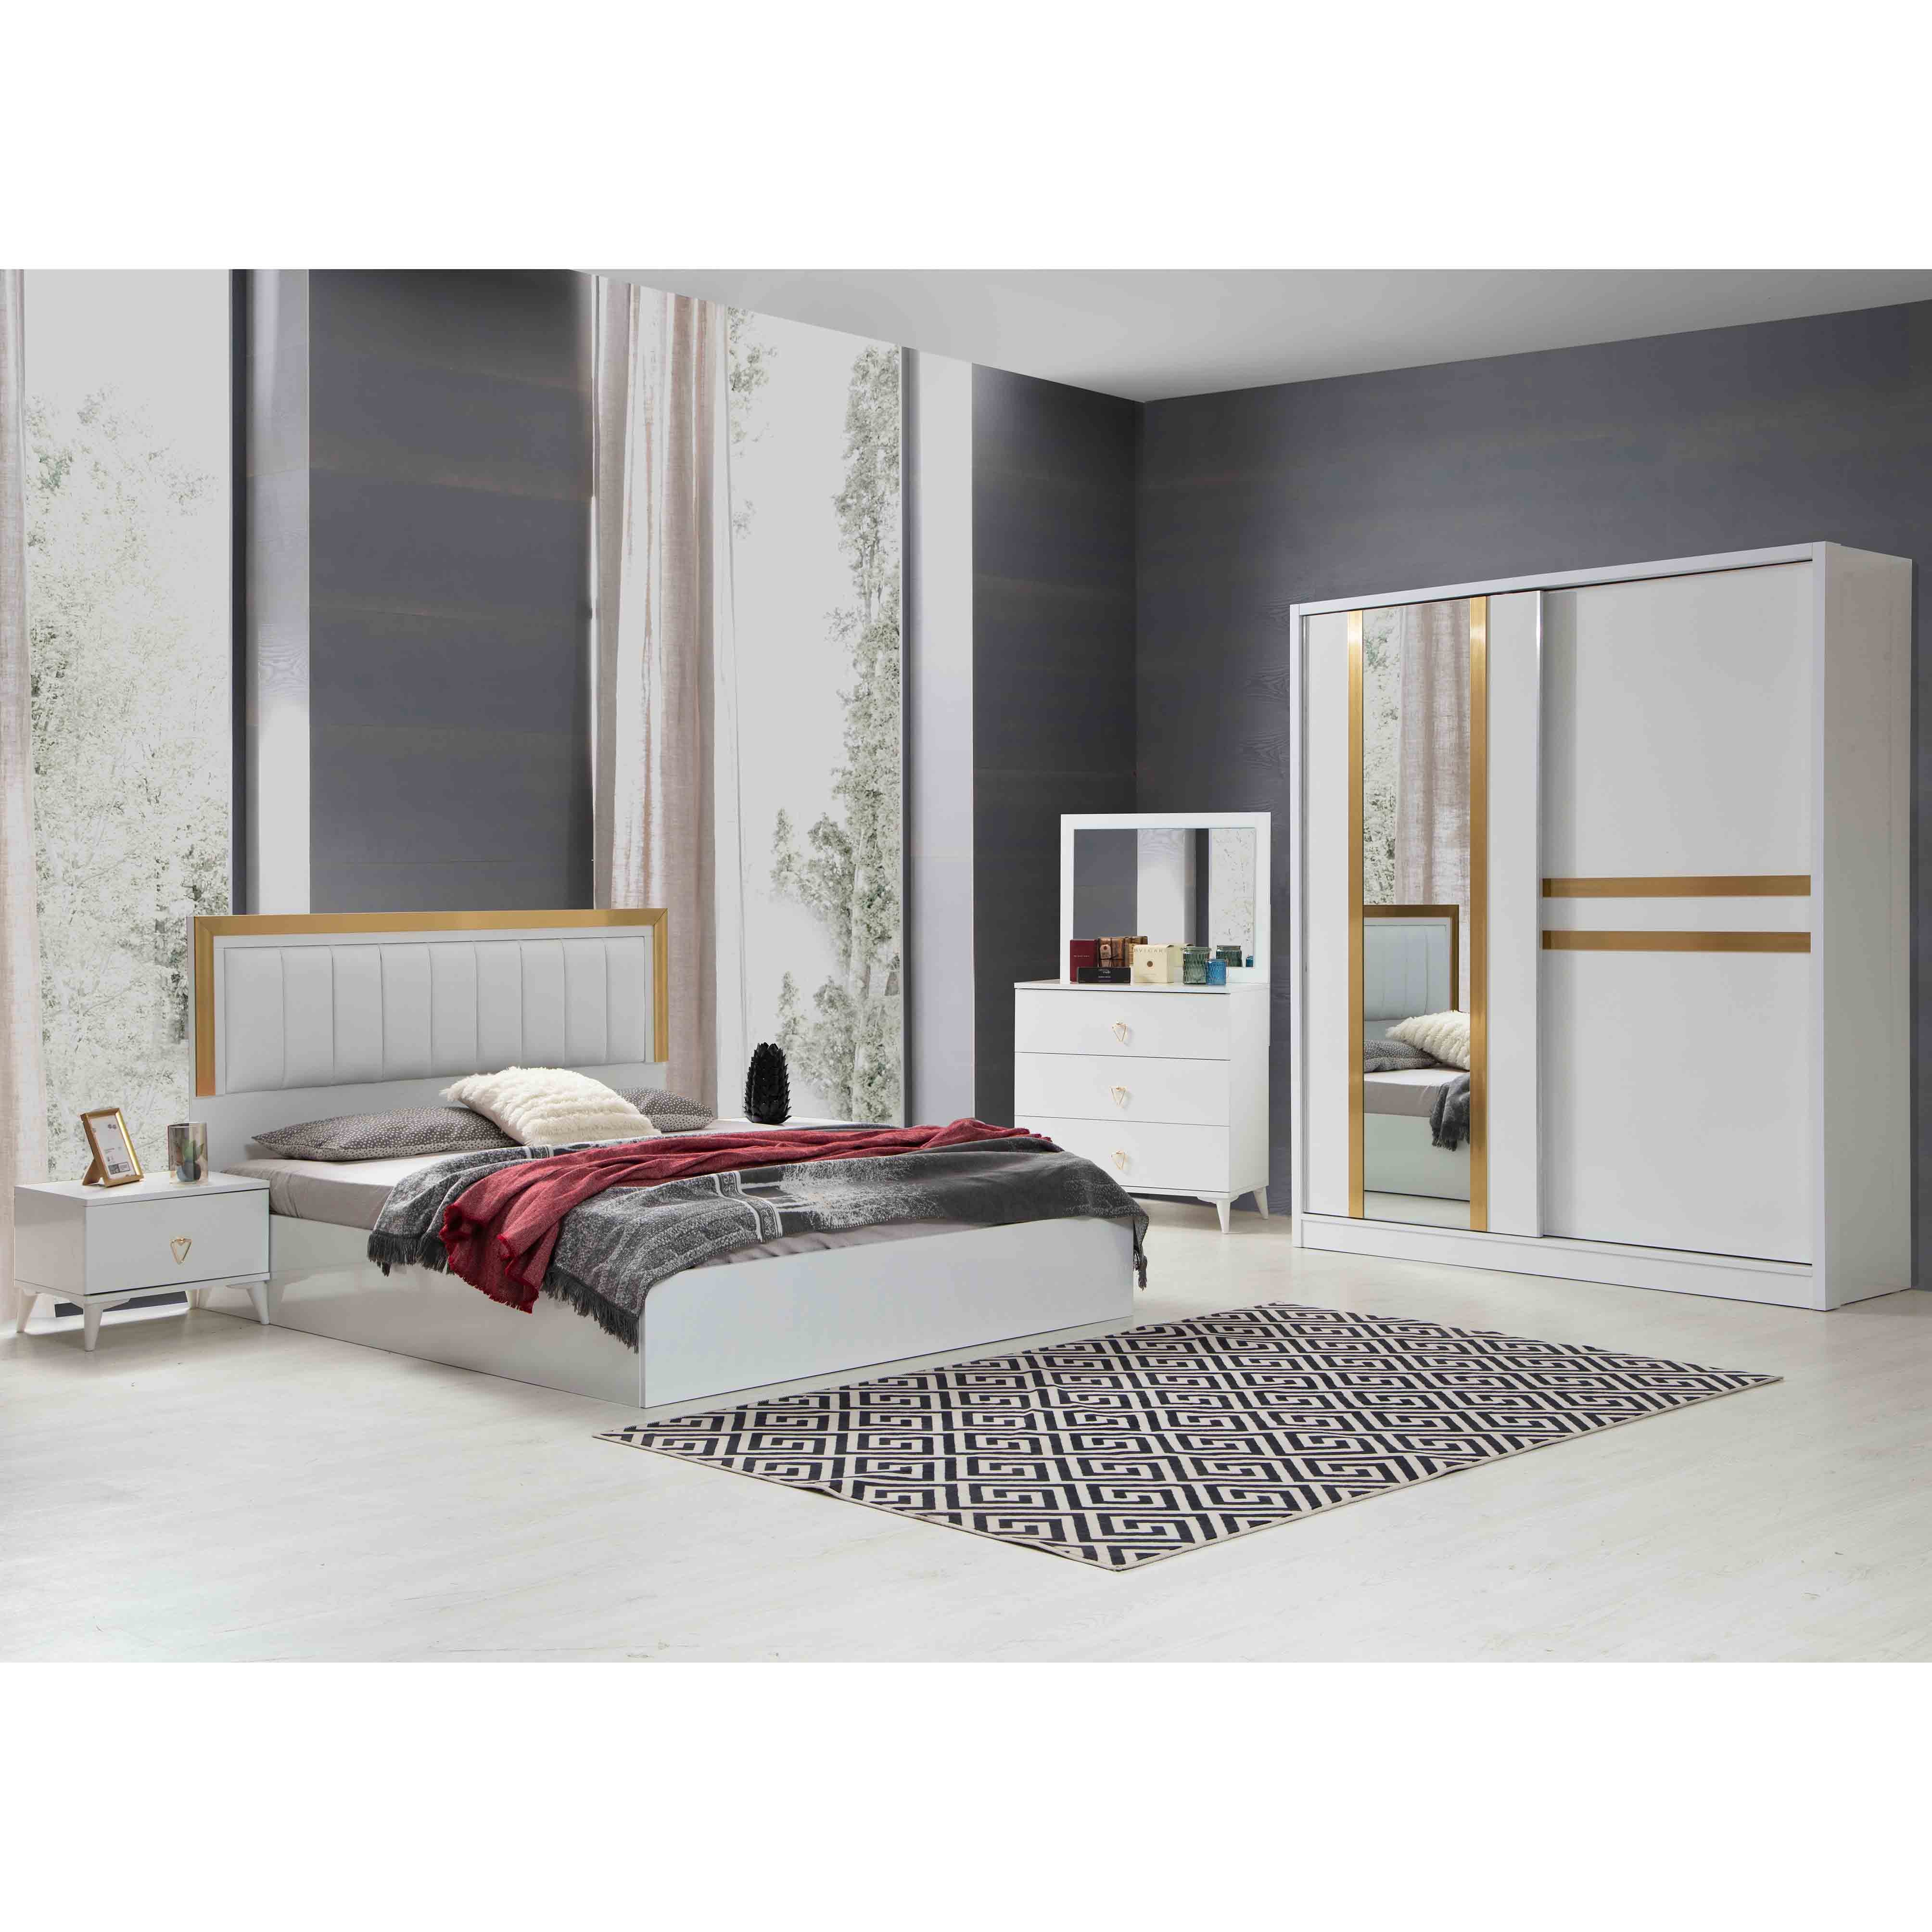 Rüya Vol1 Bed With Storage 180x200 cm